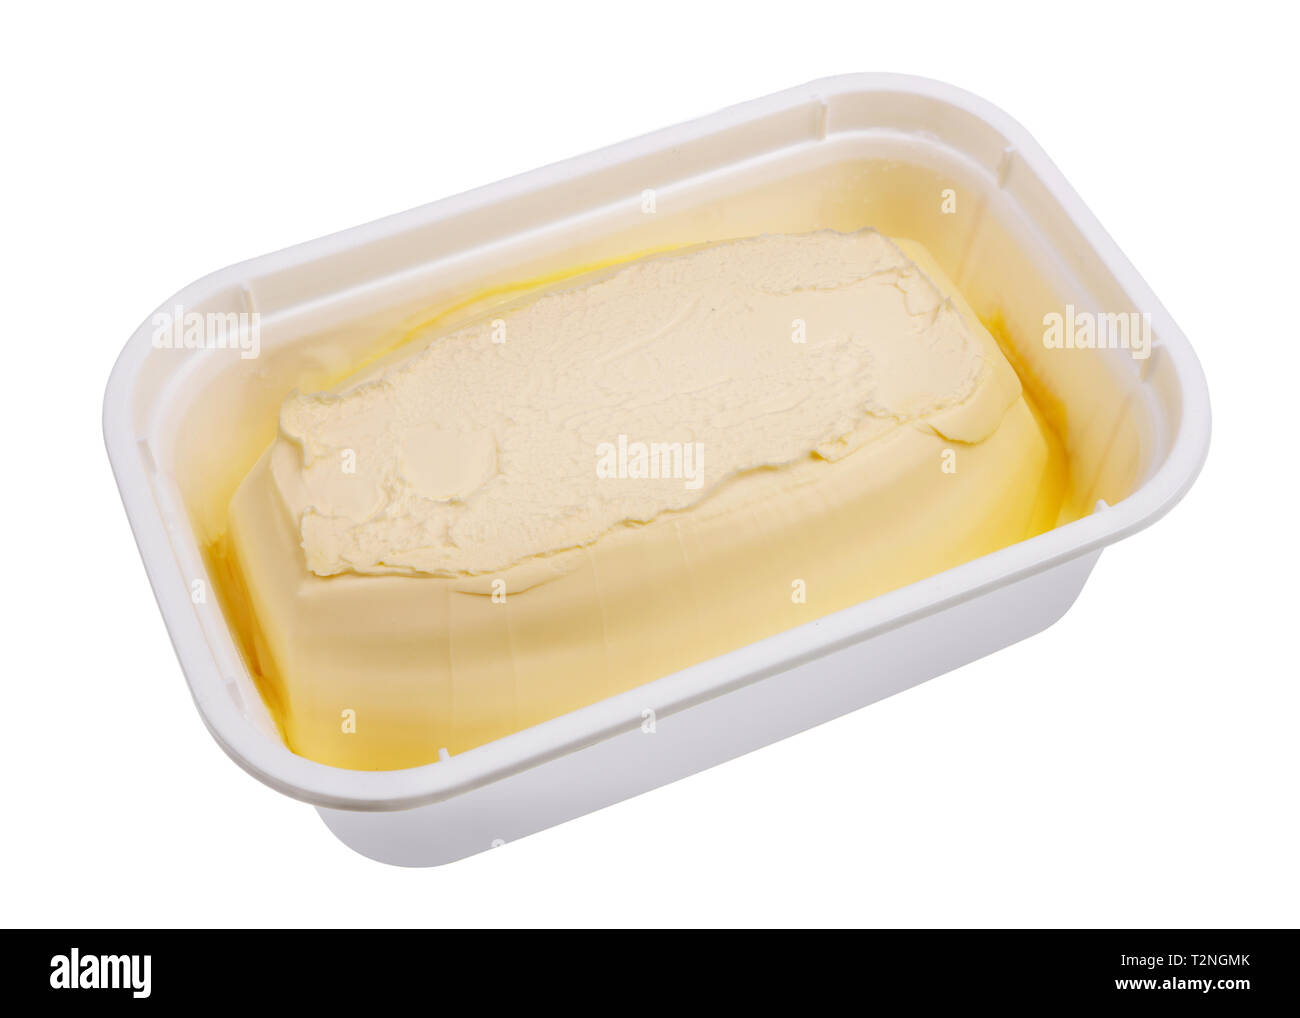 La margarine crémeuse dans un contenant de plastique industriel fort. Isolé sur blanc studio macro shot Banque D'Images